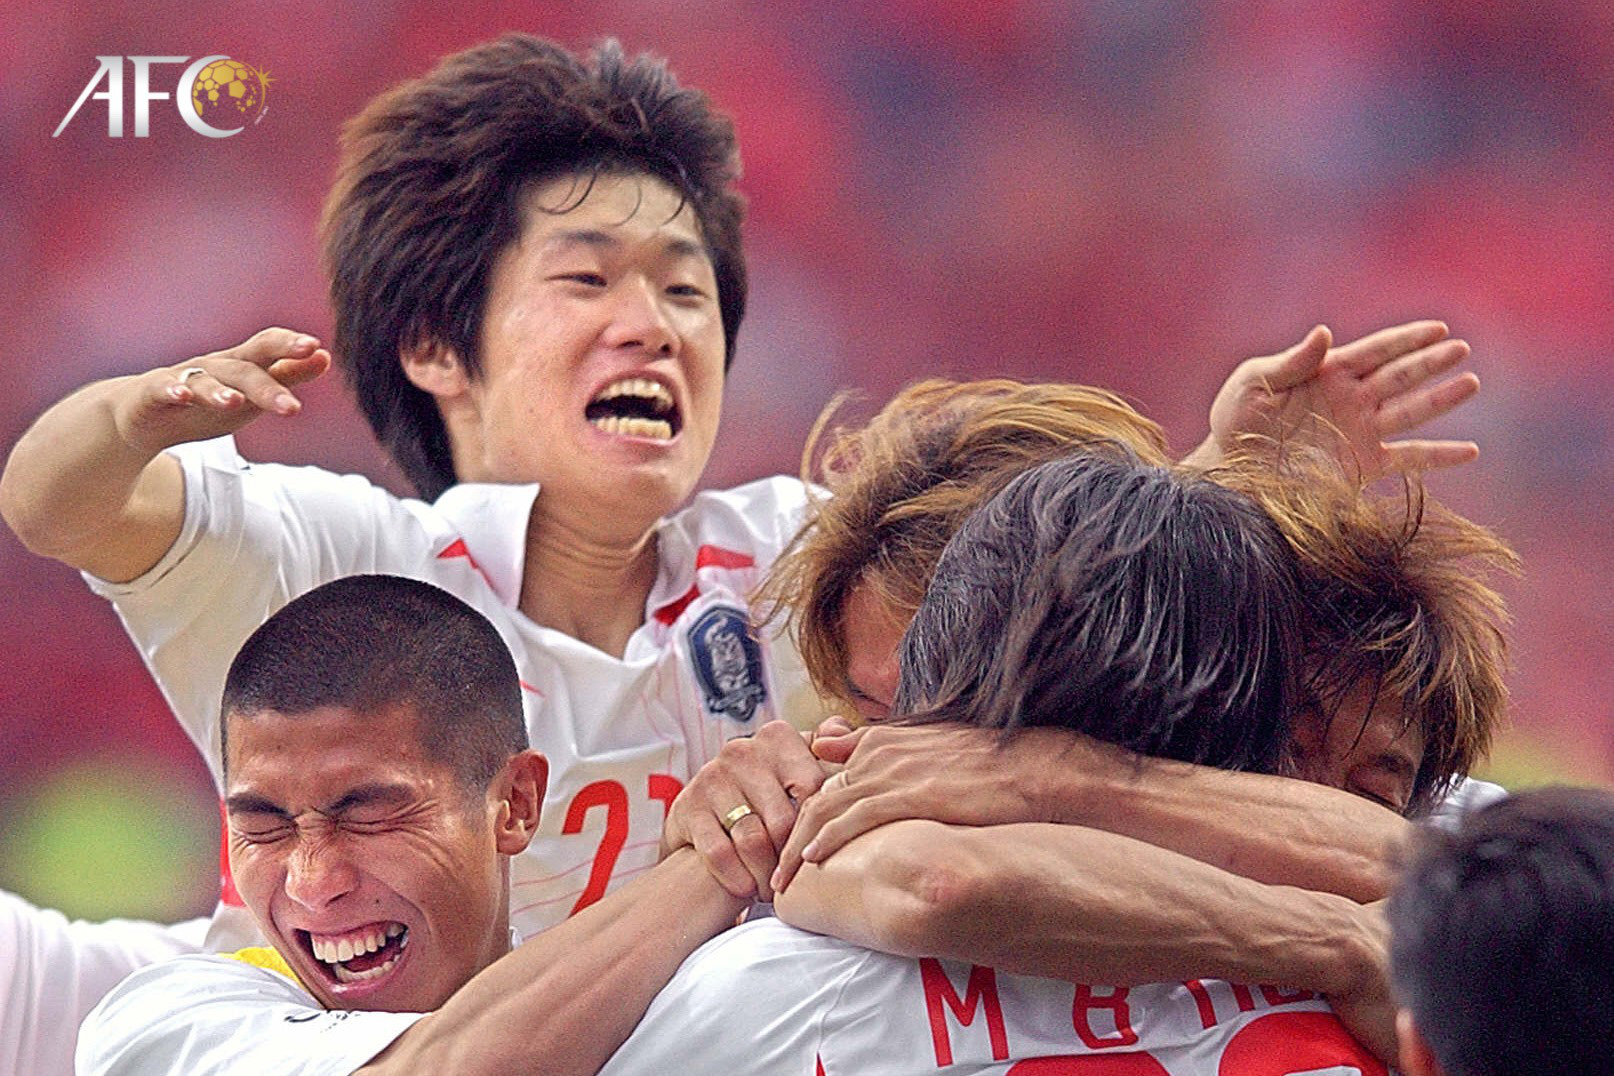 HLV Park Hang-seo nói về kỳ tích hạnh phúc cùng Hàn Quốc ở World Cup, từng bị coi là nỗi hổ thẹn châu Á - Ảnh 1.